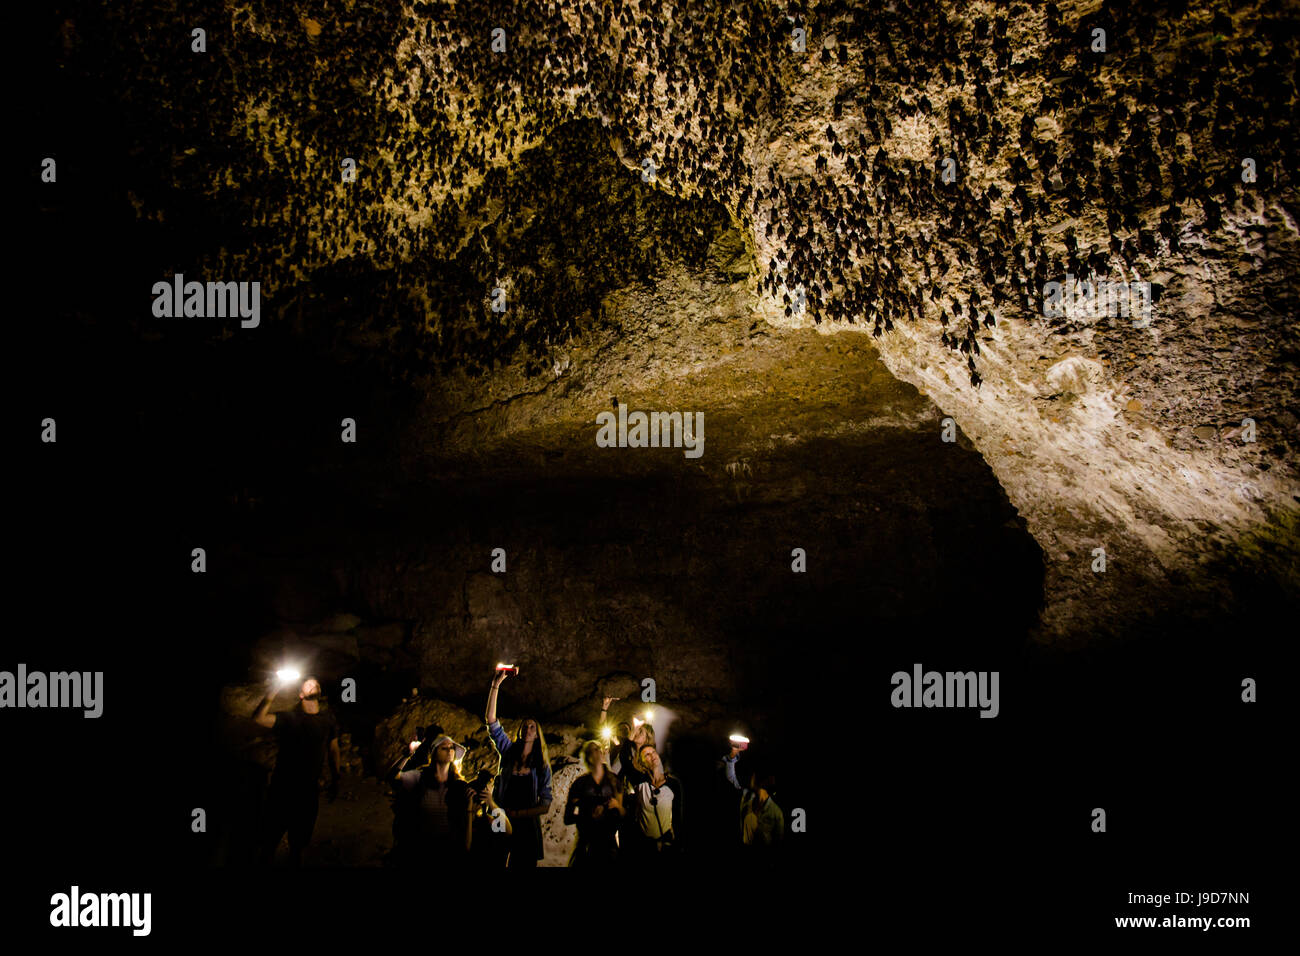 Lampes de spéléologues qui brille sur les chauves-souris dans les grottes de chauves-souris, Pokhara Pokhara, Népal, Asie Banque D'Images